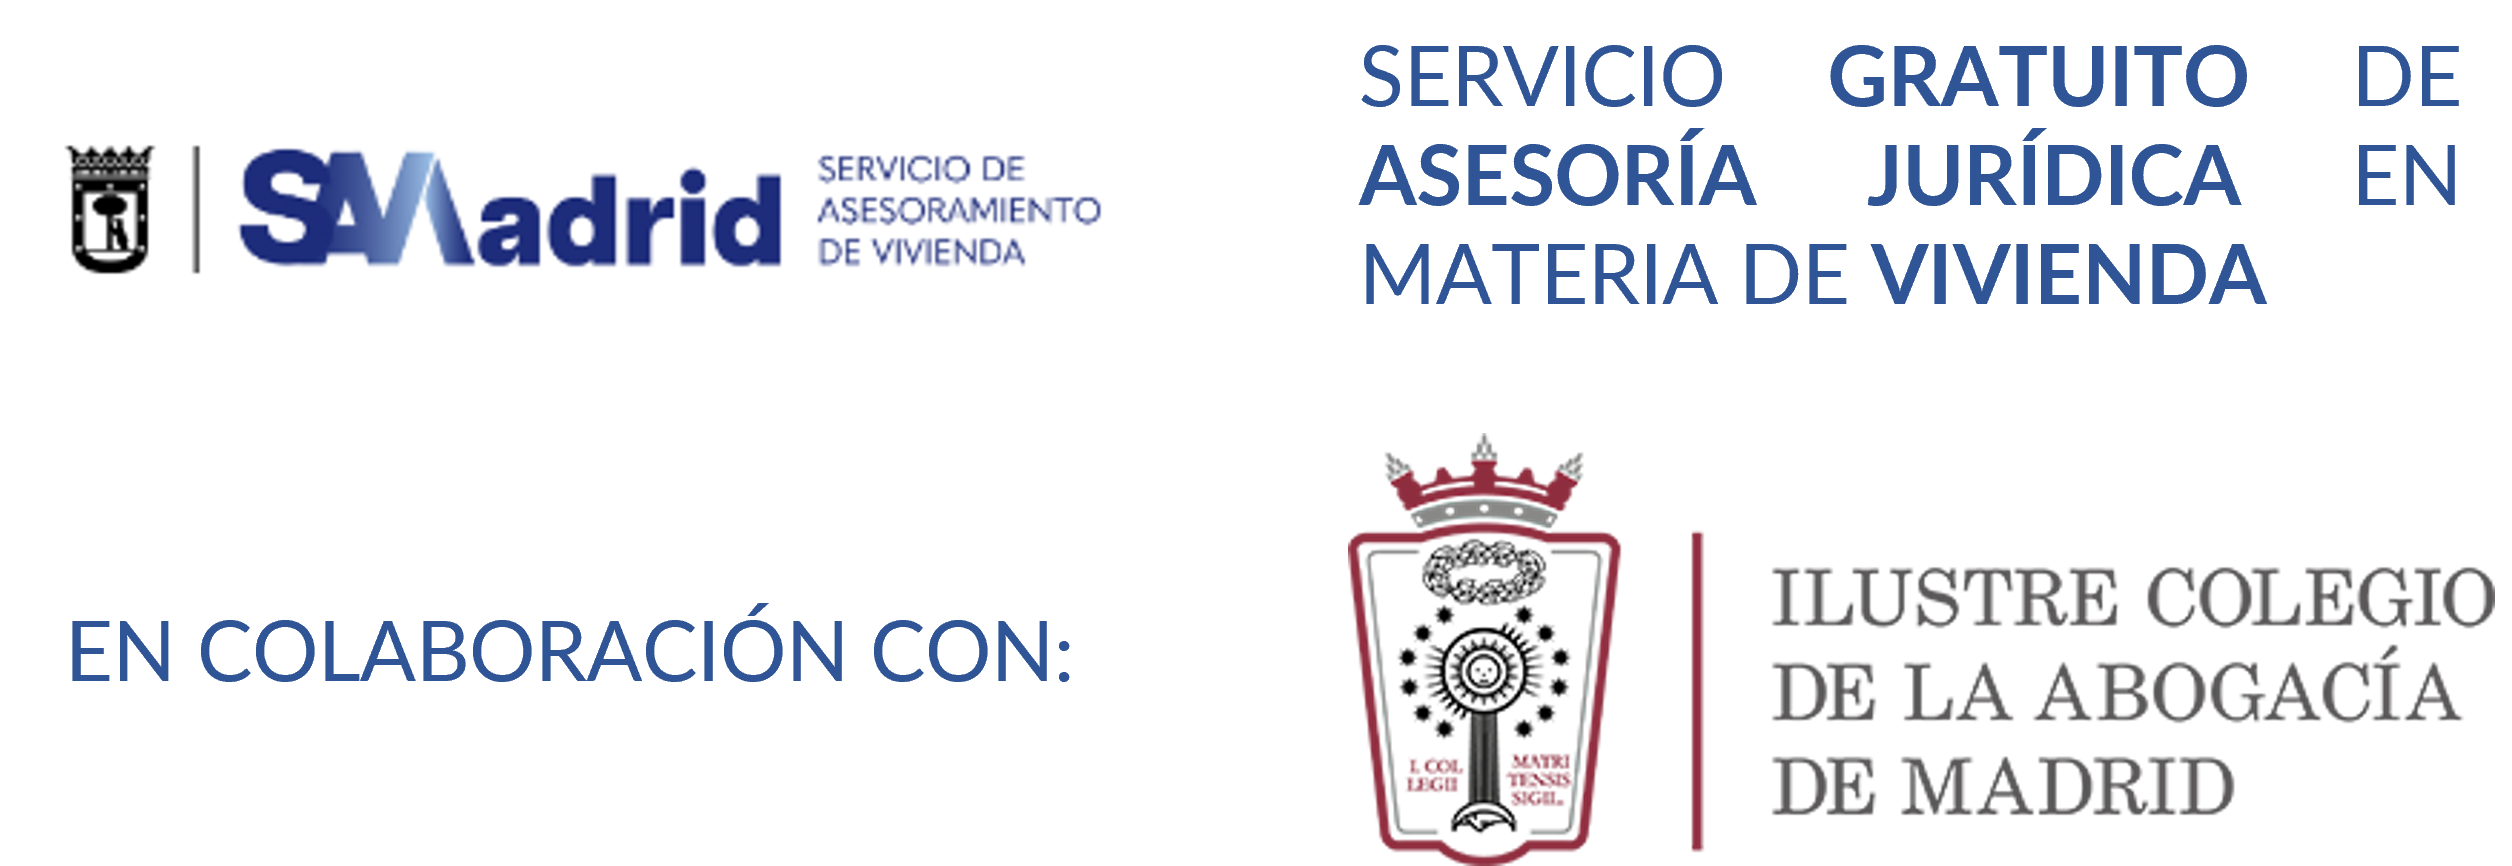 Logotipo del Colegio Oficial de la Abogacía de Madrid